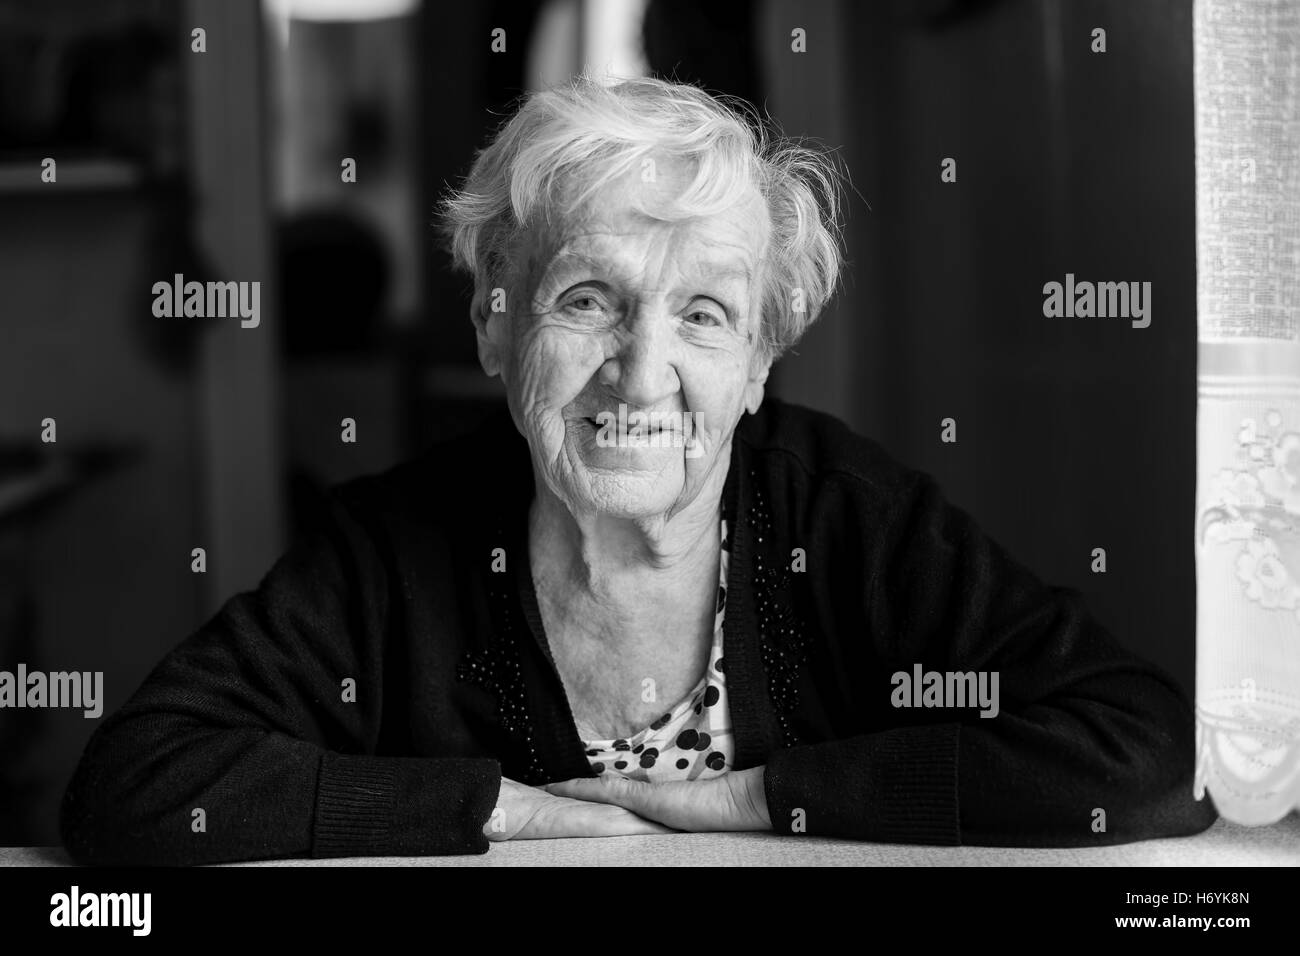 Ältere Frau Porträt. Schwarz-weiß-Foto mit hohem Kontrast. Stockfoto